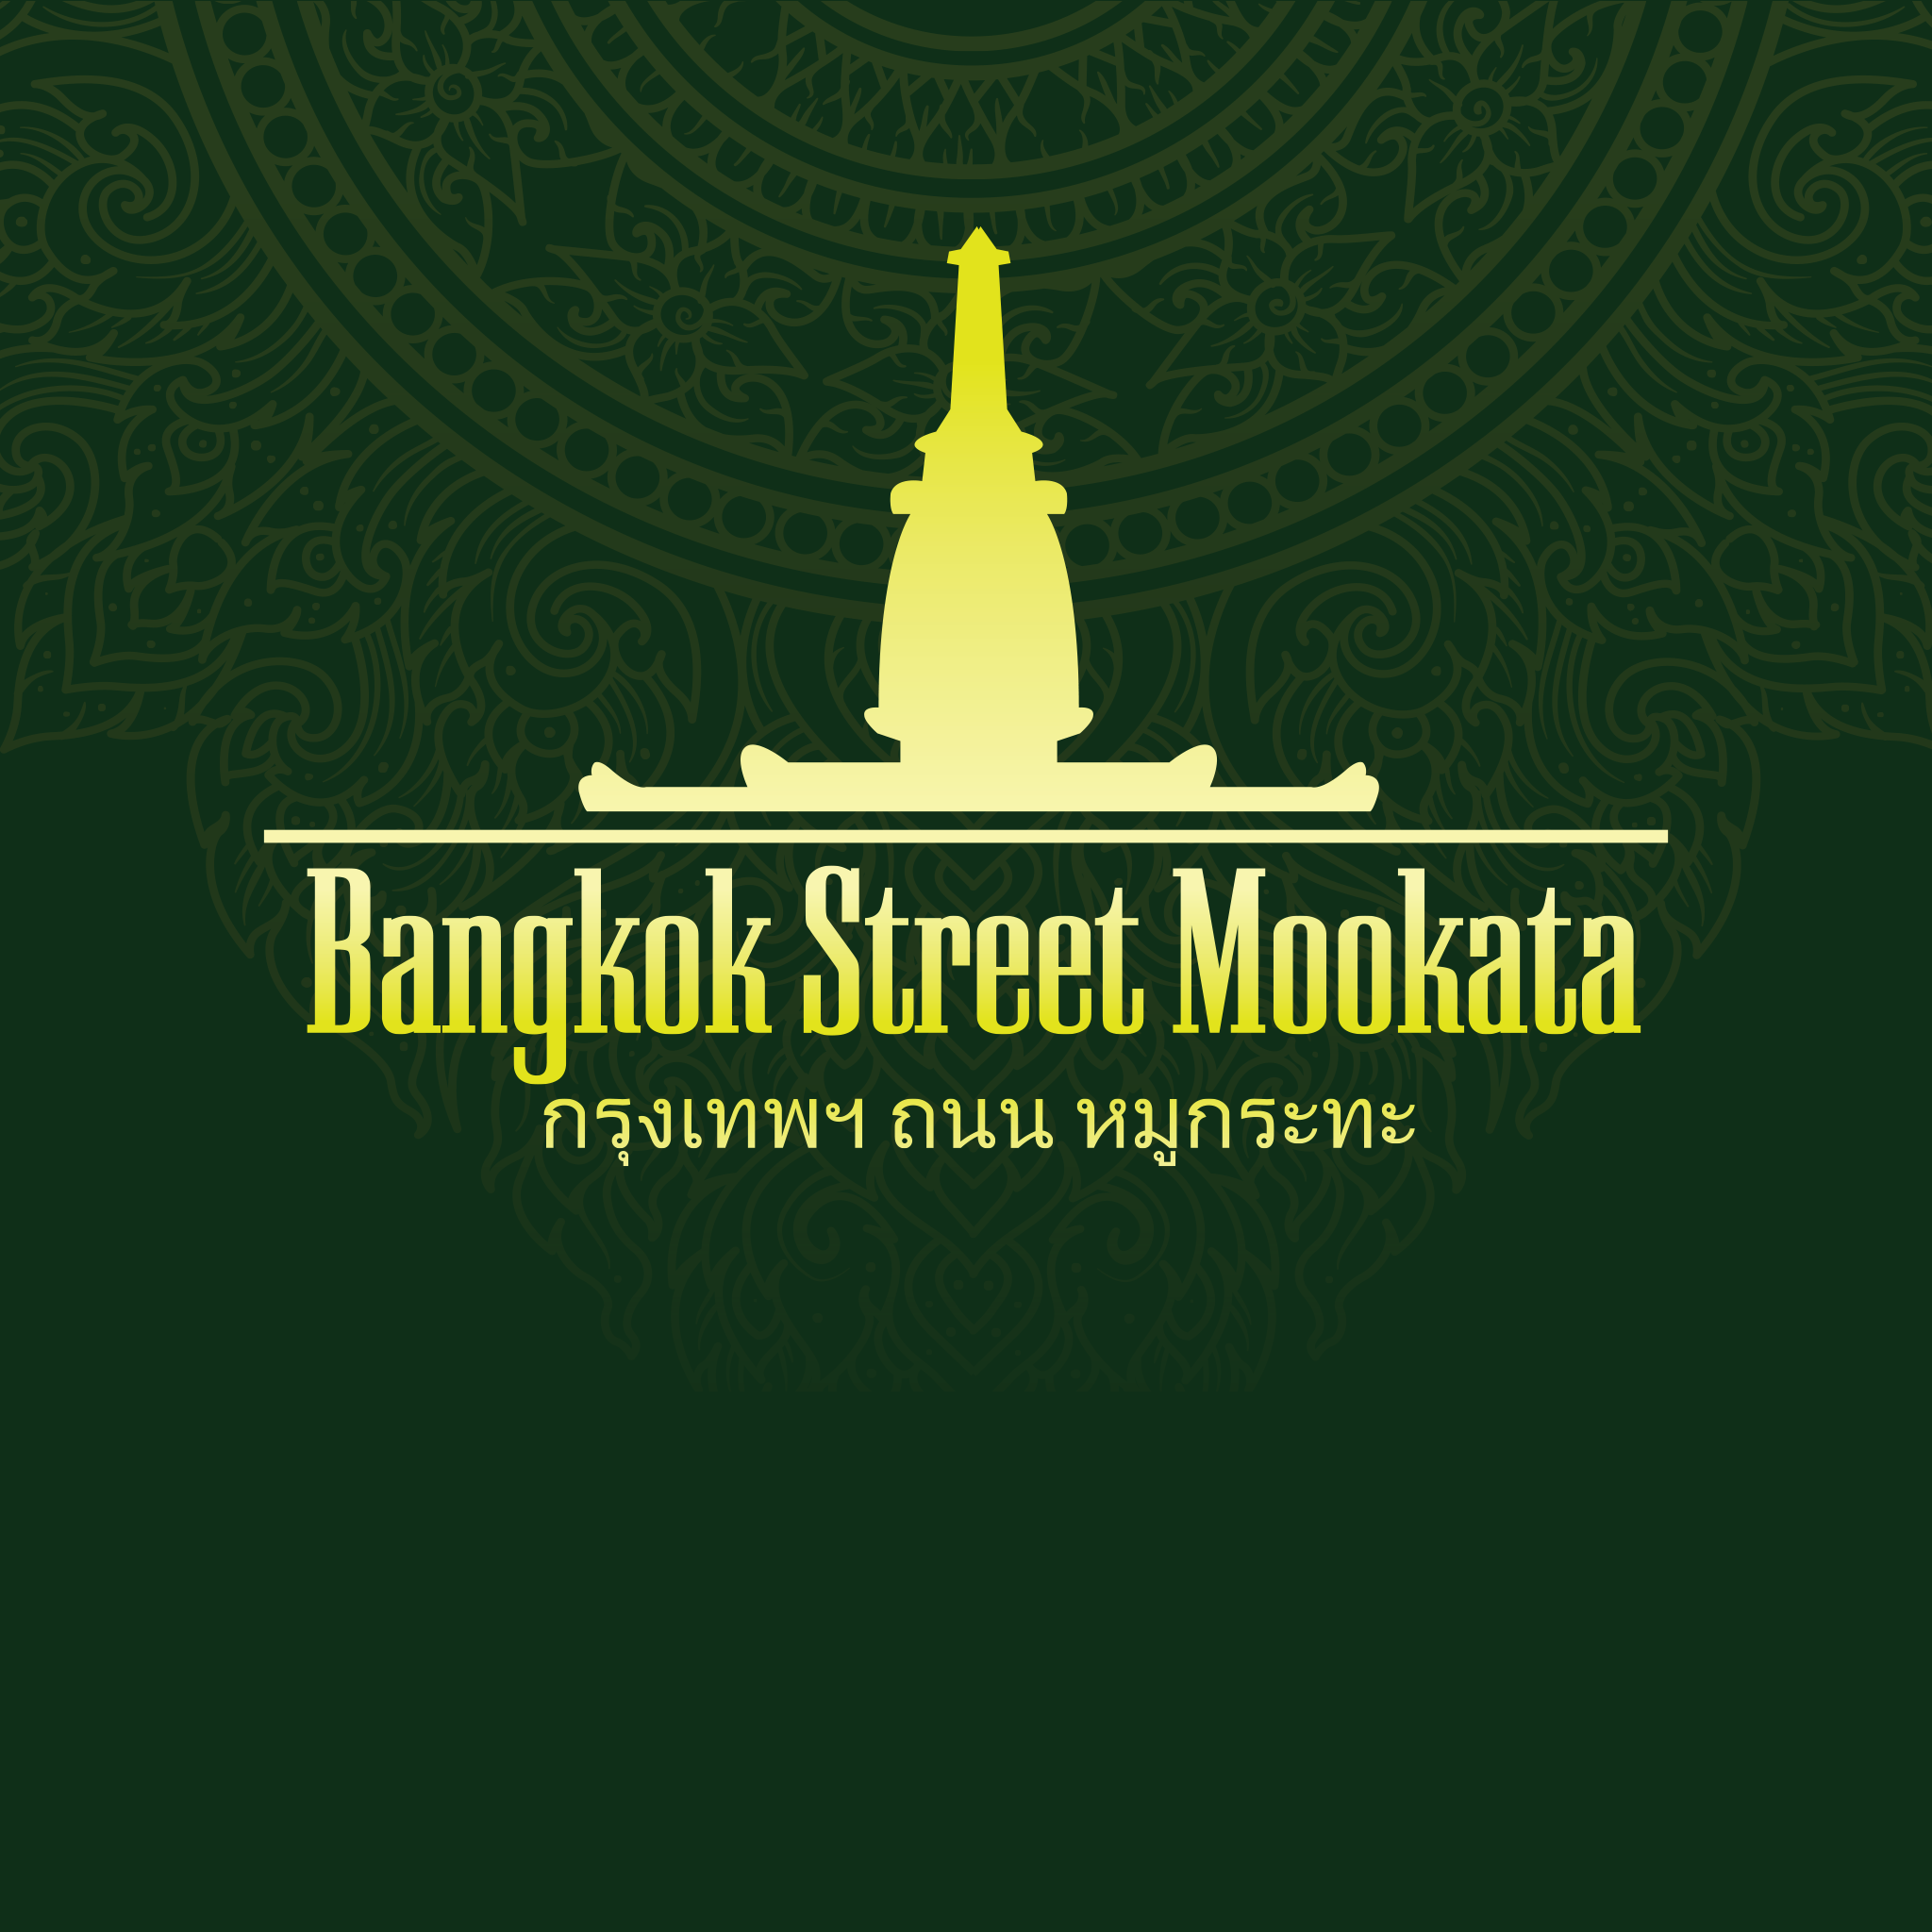 Bangkok Street Mookata - Logo